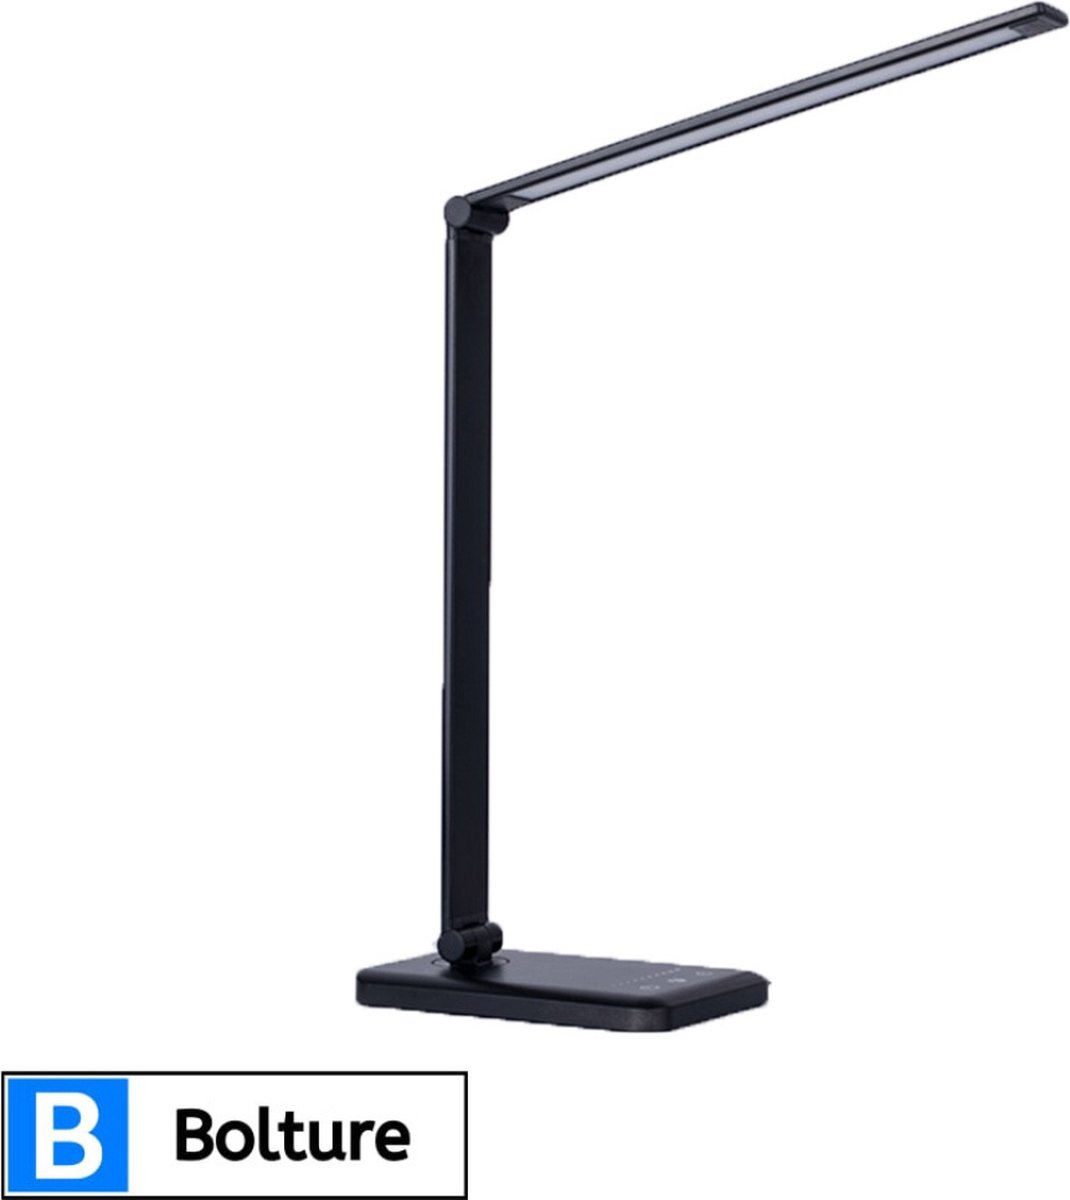 Bolture Daglicht Bureaulamp - Daglichtlamp Staand - Tafellamp - Hobbylamp - Schilderen - Hobby - USB Oplaadpoort - Dimbaar - Zwart